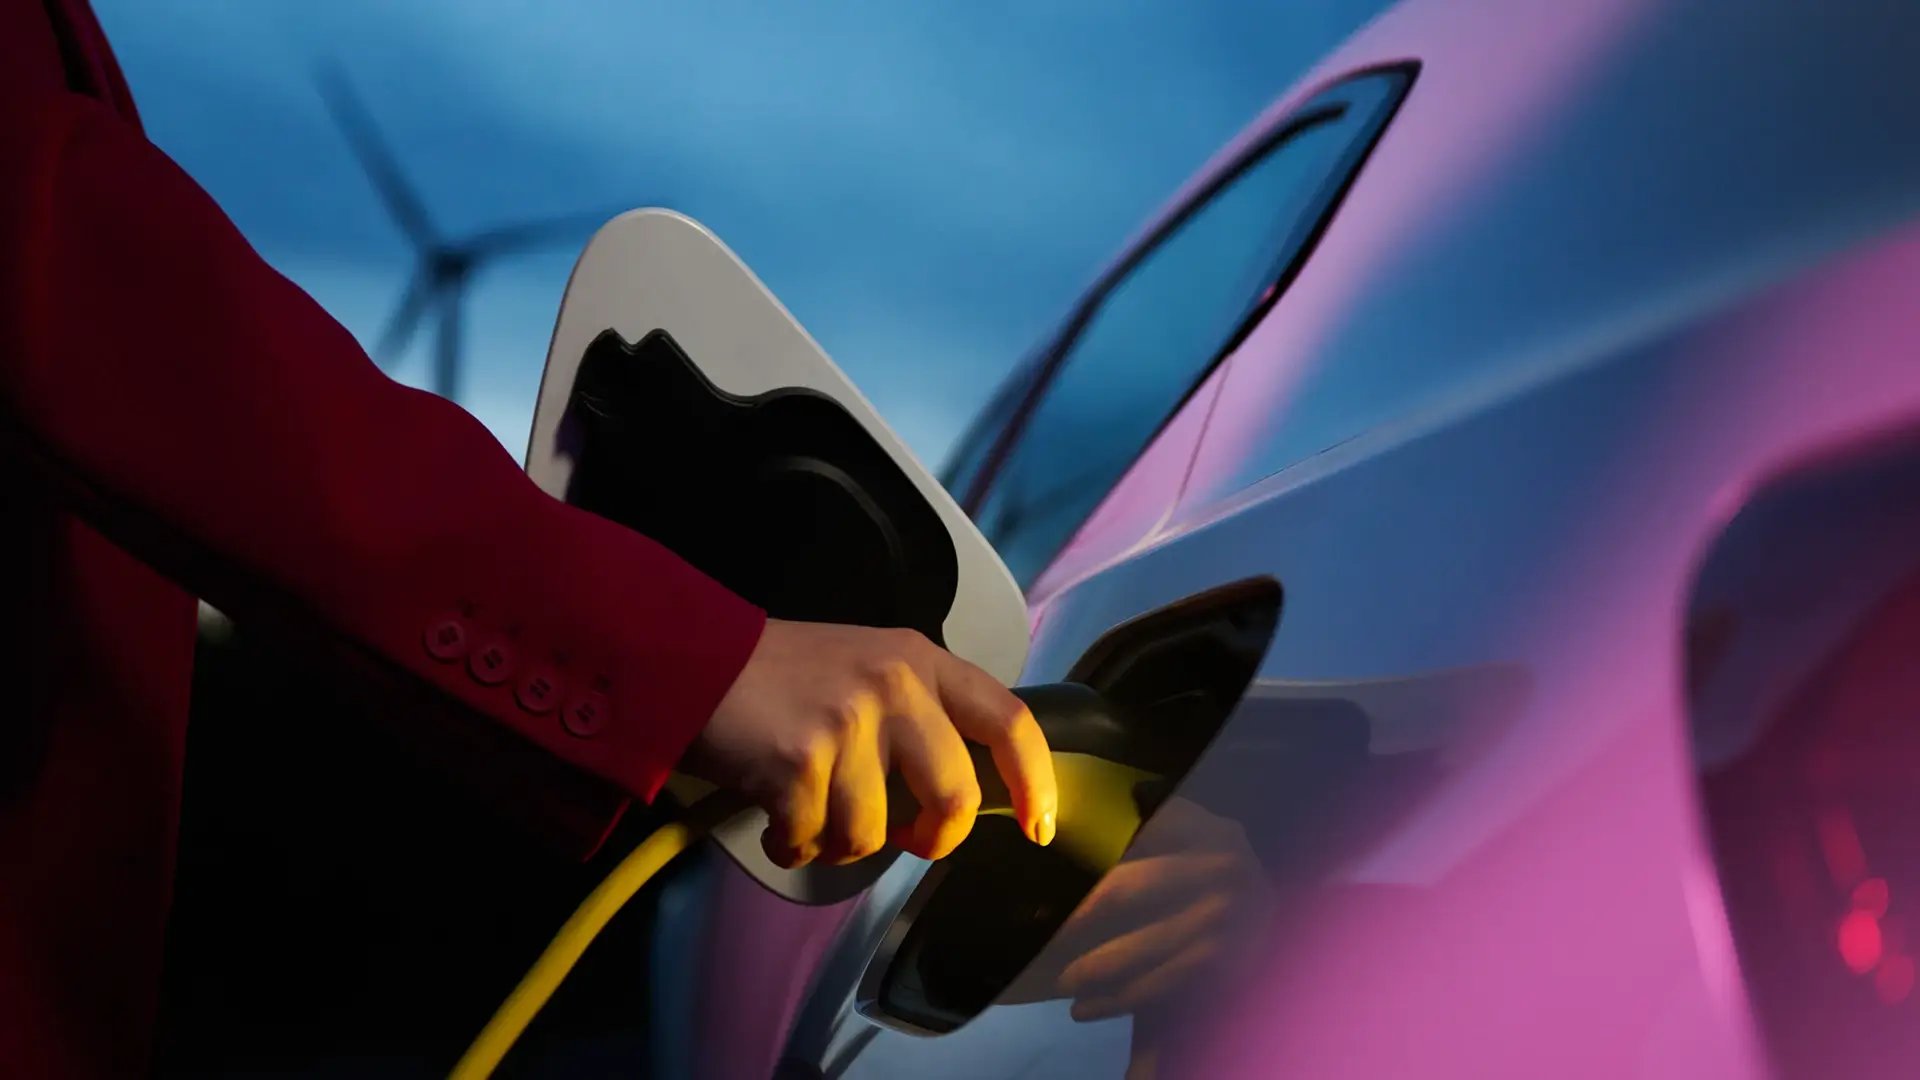 Femme chargeant un véhicule électrique, éolienne, fond bleu